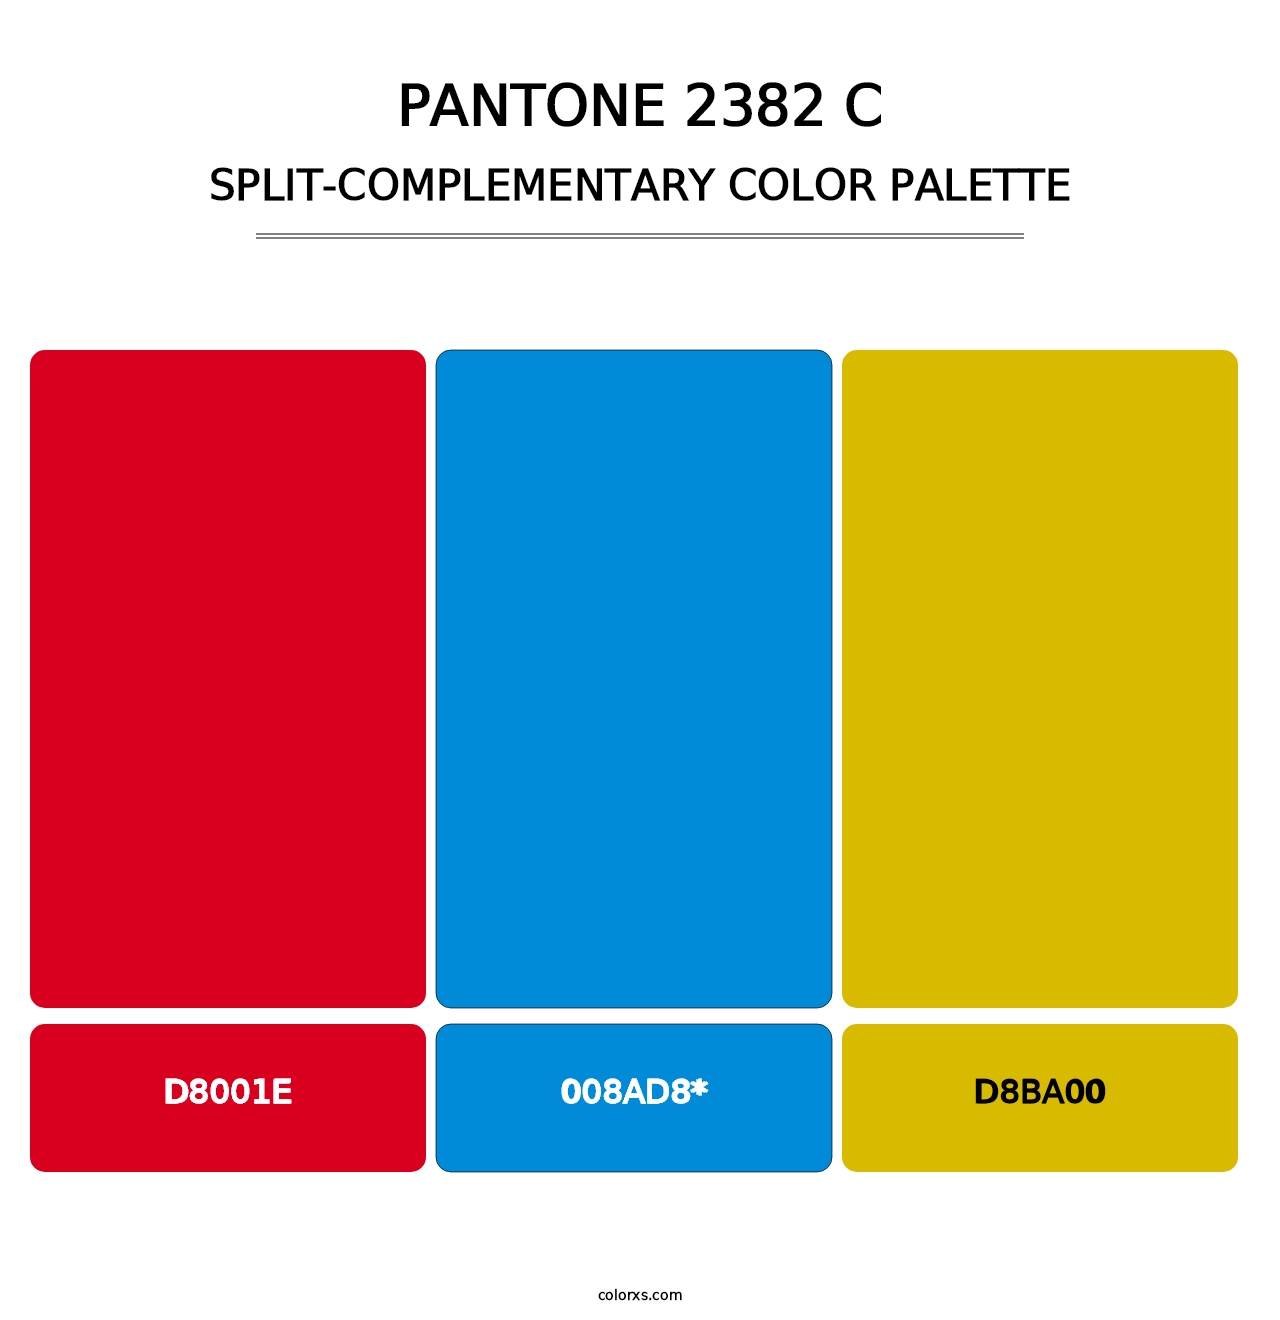 PANTONE 2382 C - Split-Complementary Color Palette